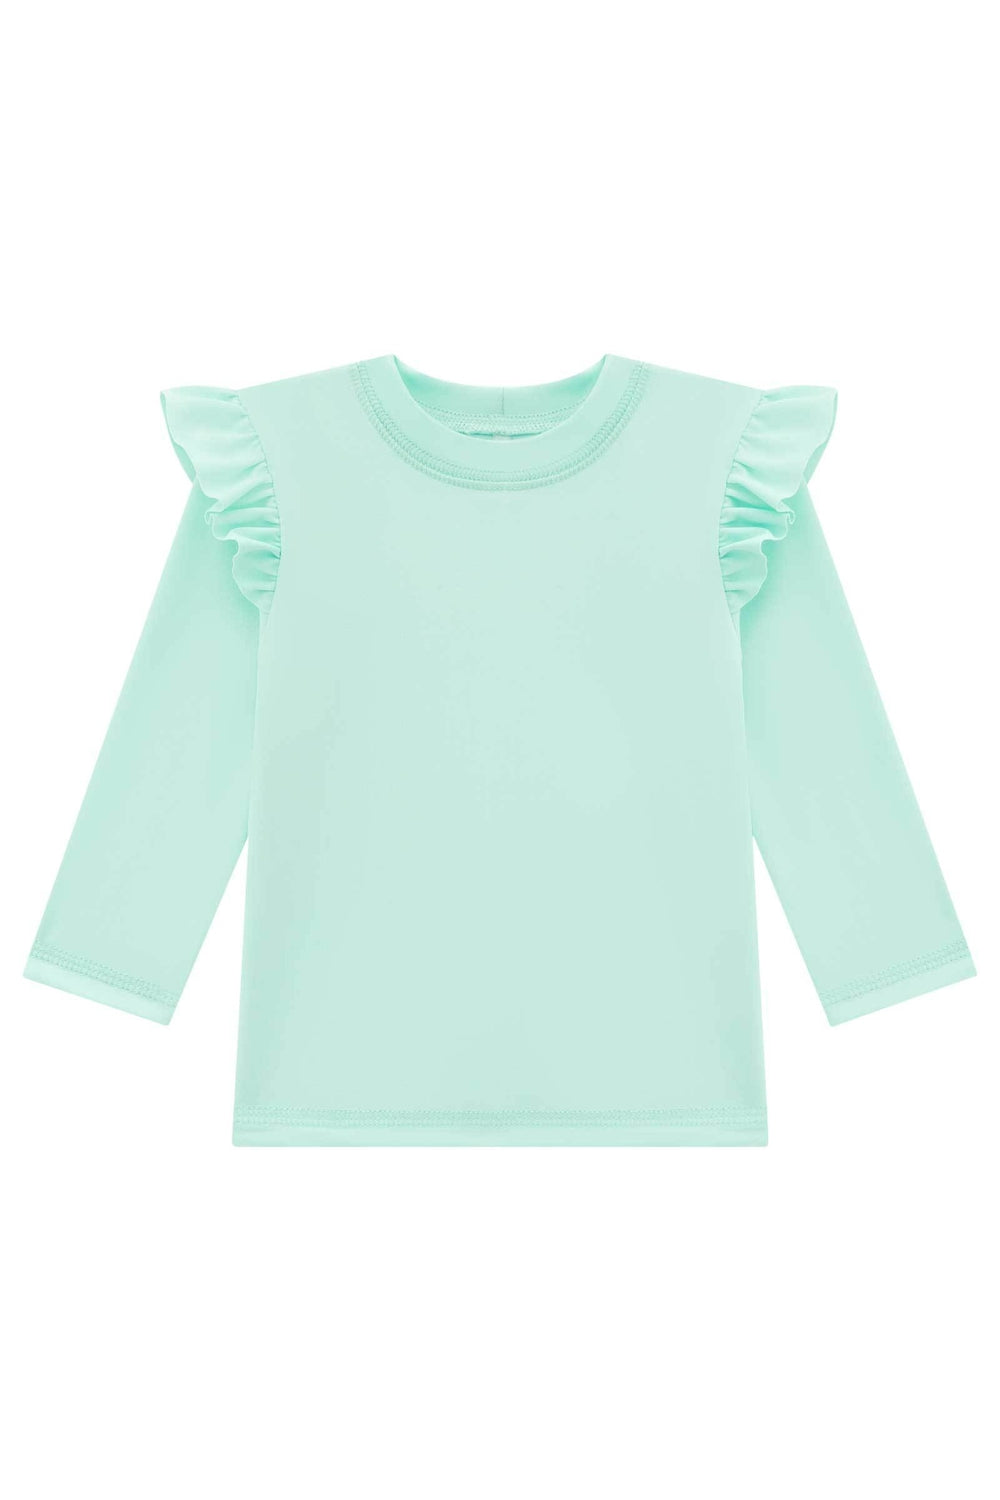 Blusa em Malha Uv Dry com Proteção UV 50+ 66458 Infanti-BLUSAS-Infanti